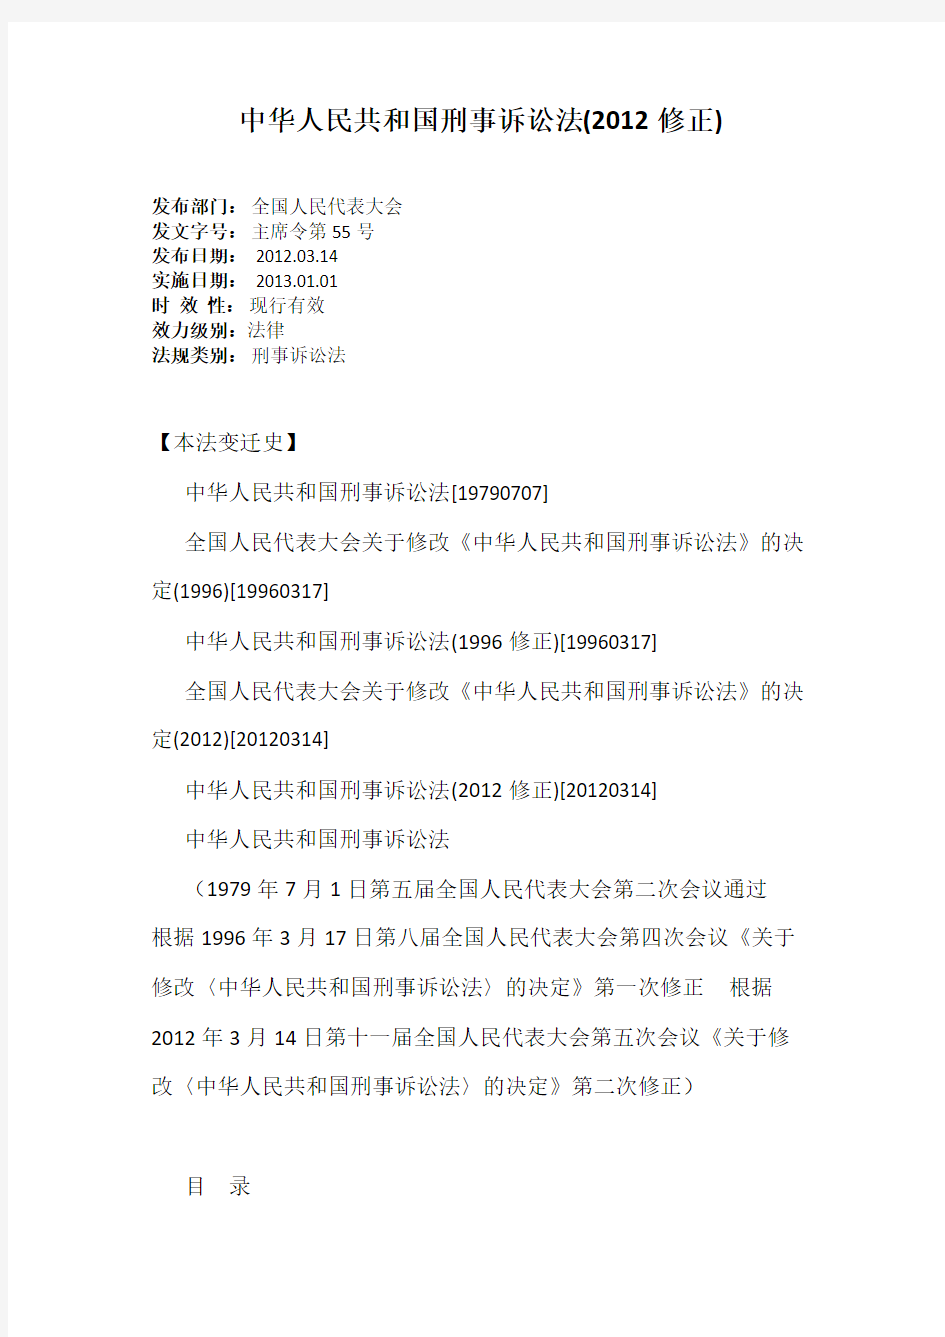 中华人民共和国刑事诉讼法(2012修正)